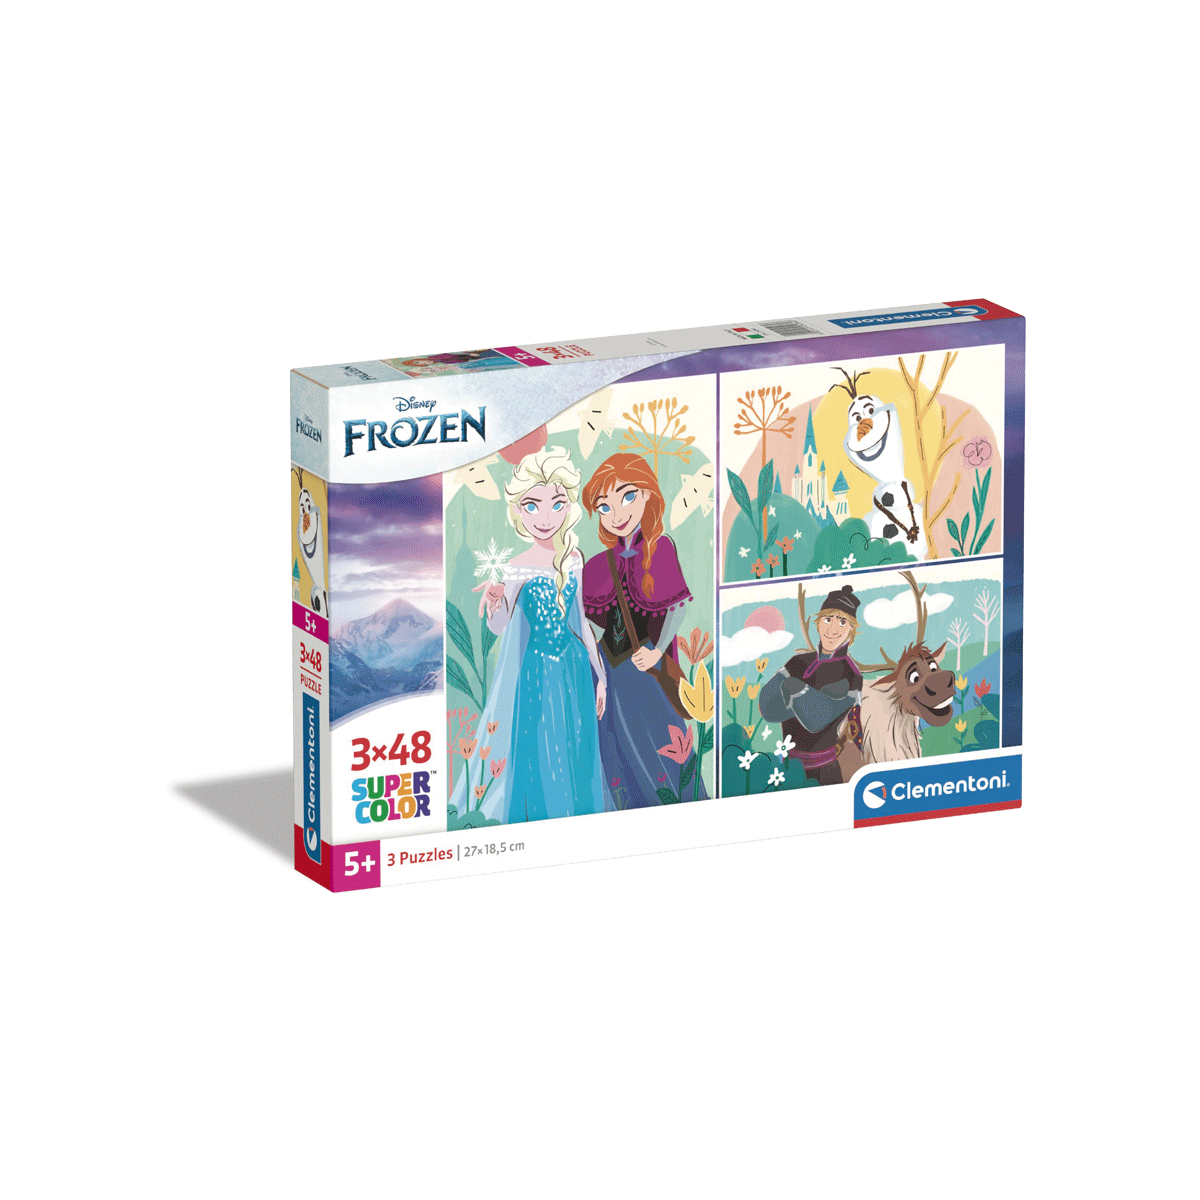 Clementoni supercolor puzzle - disney frozen - 3x48 pezzi, puzzle bambini 5 anni - CLEMENTONI, DISNEY PRINCESS